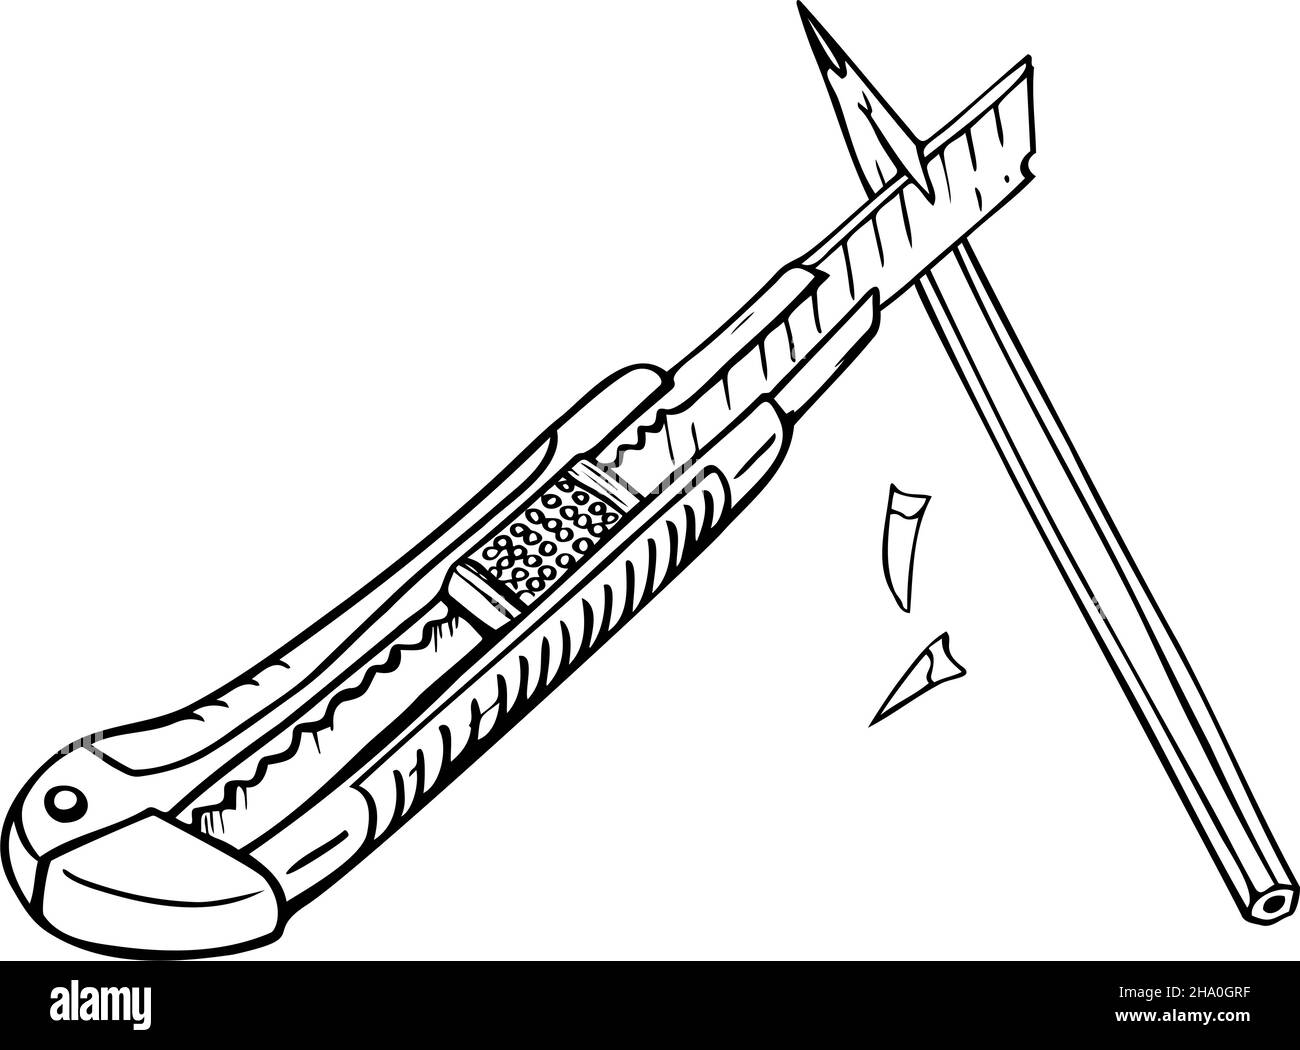 Vektordarstellung von Schreibwarenmesser und Bleistift. Design für das ausmalen. Stock Vektor